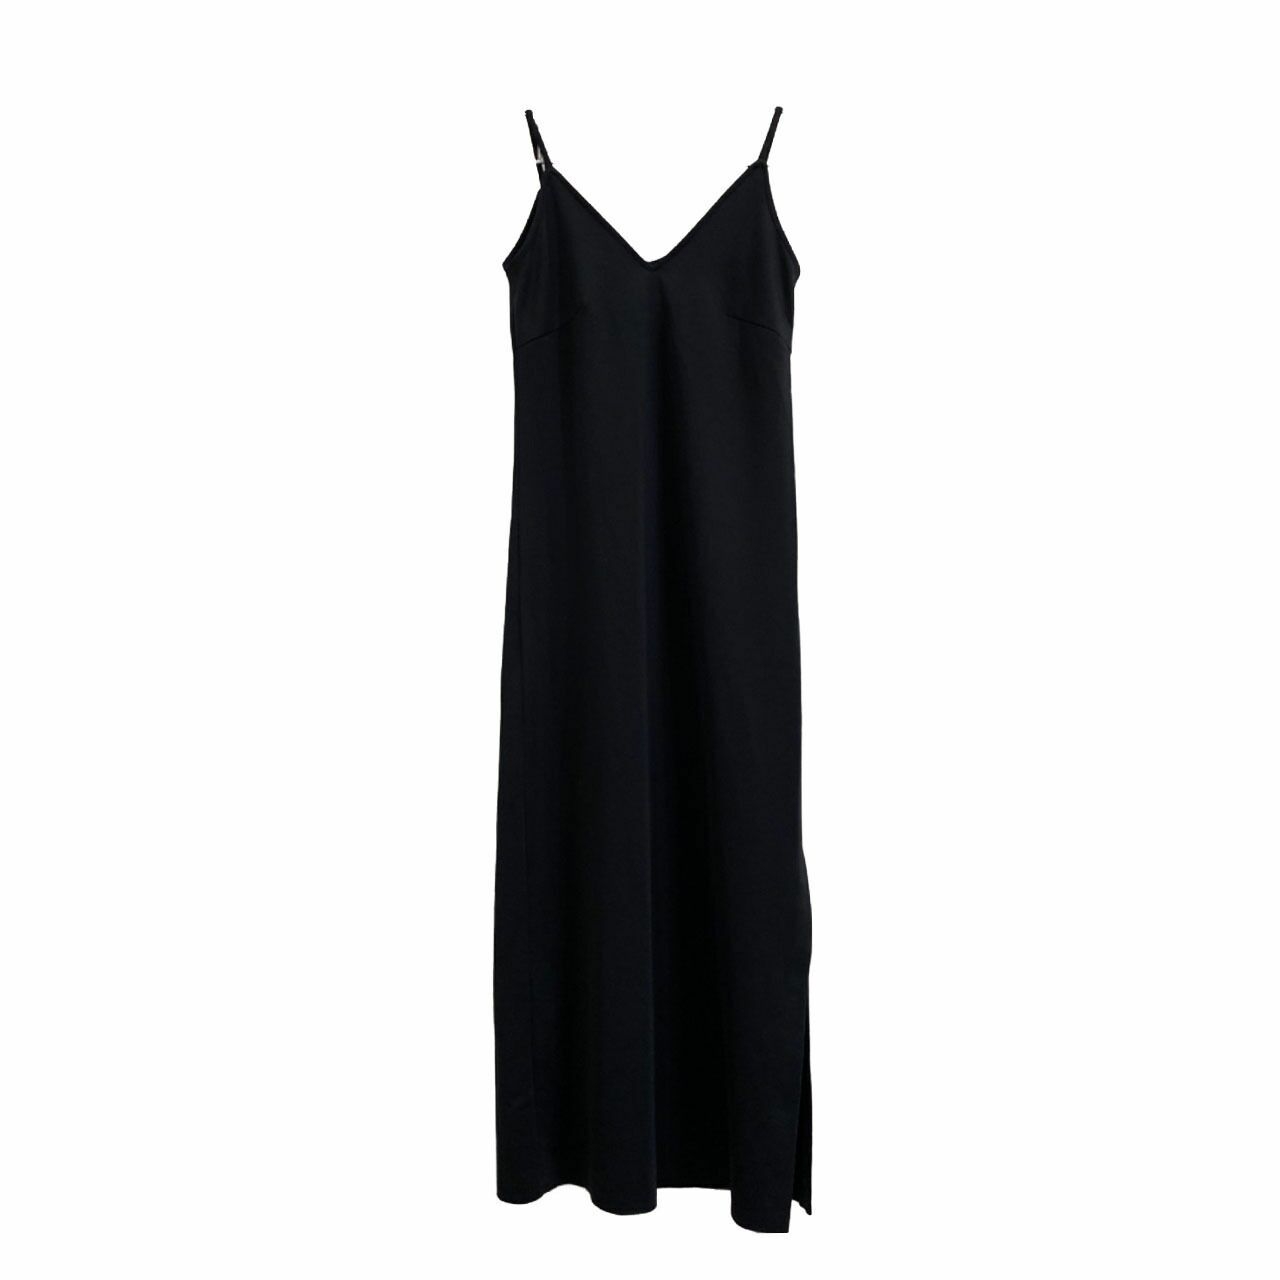 Sovi Atelier x Mmehuillet Le Vetifer Black Long Dress